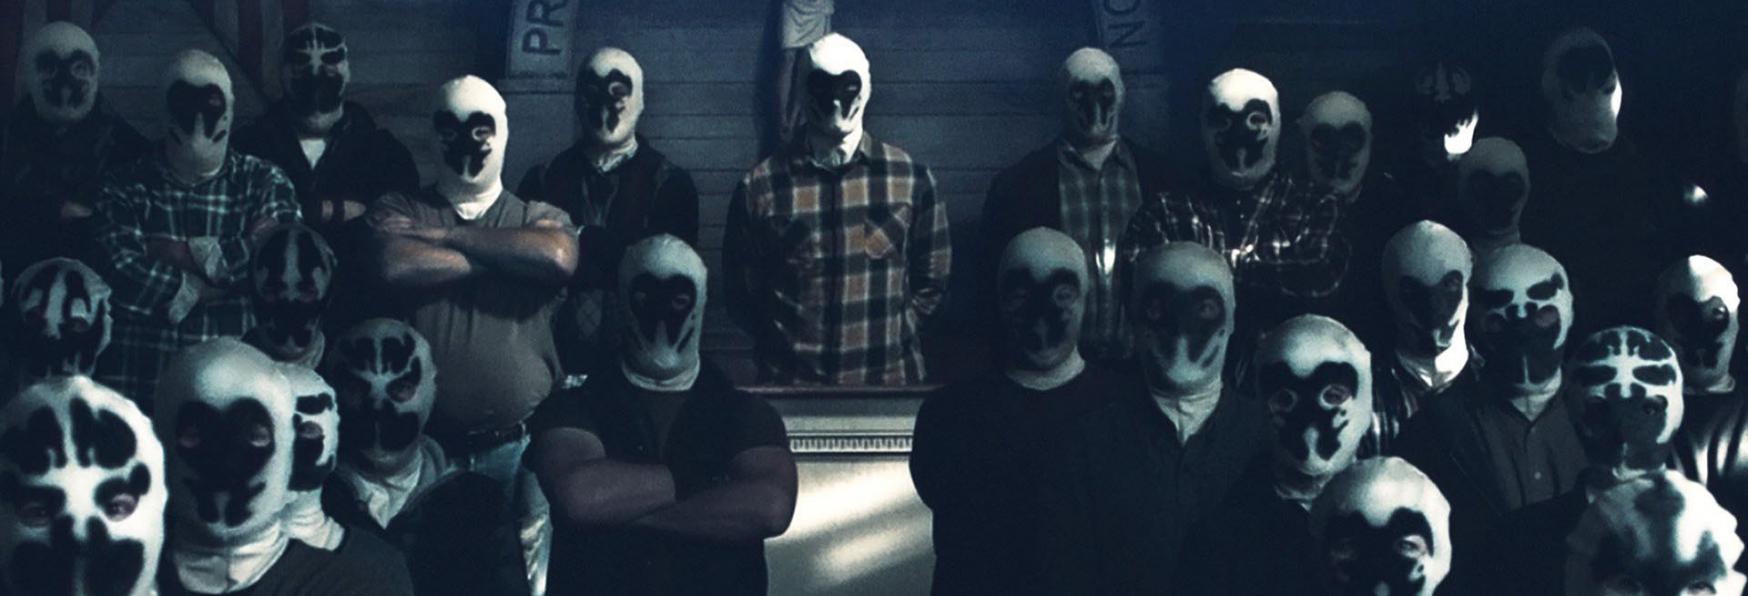 Watchmen: lo Showrunner spiega la Genesi della Giustizia Mascherata nella Serie TV HBO